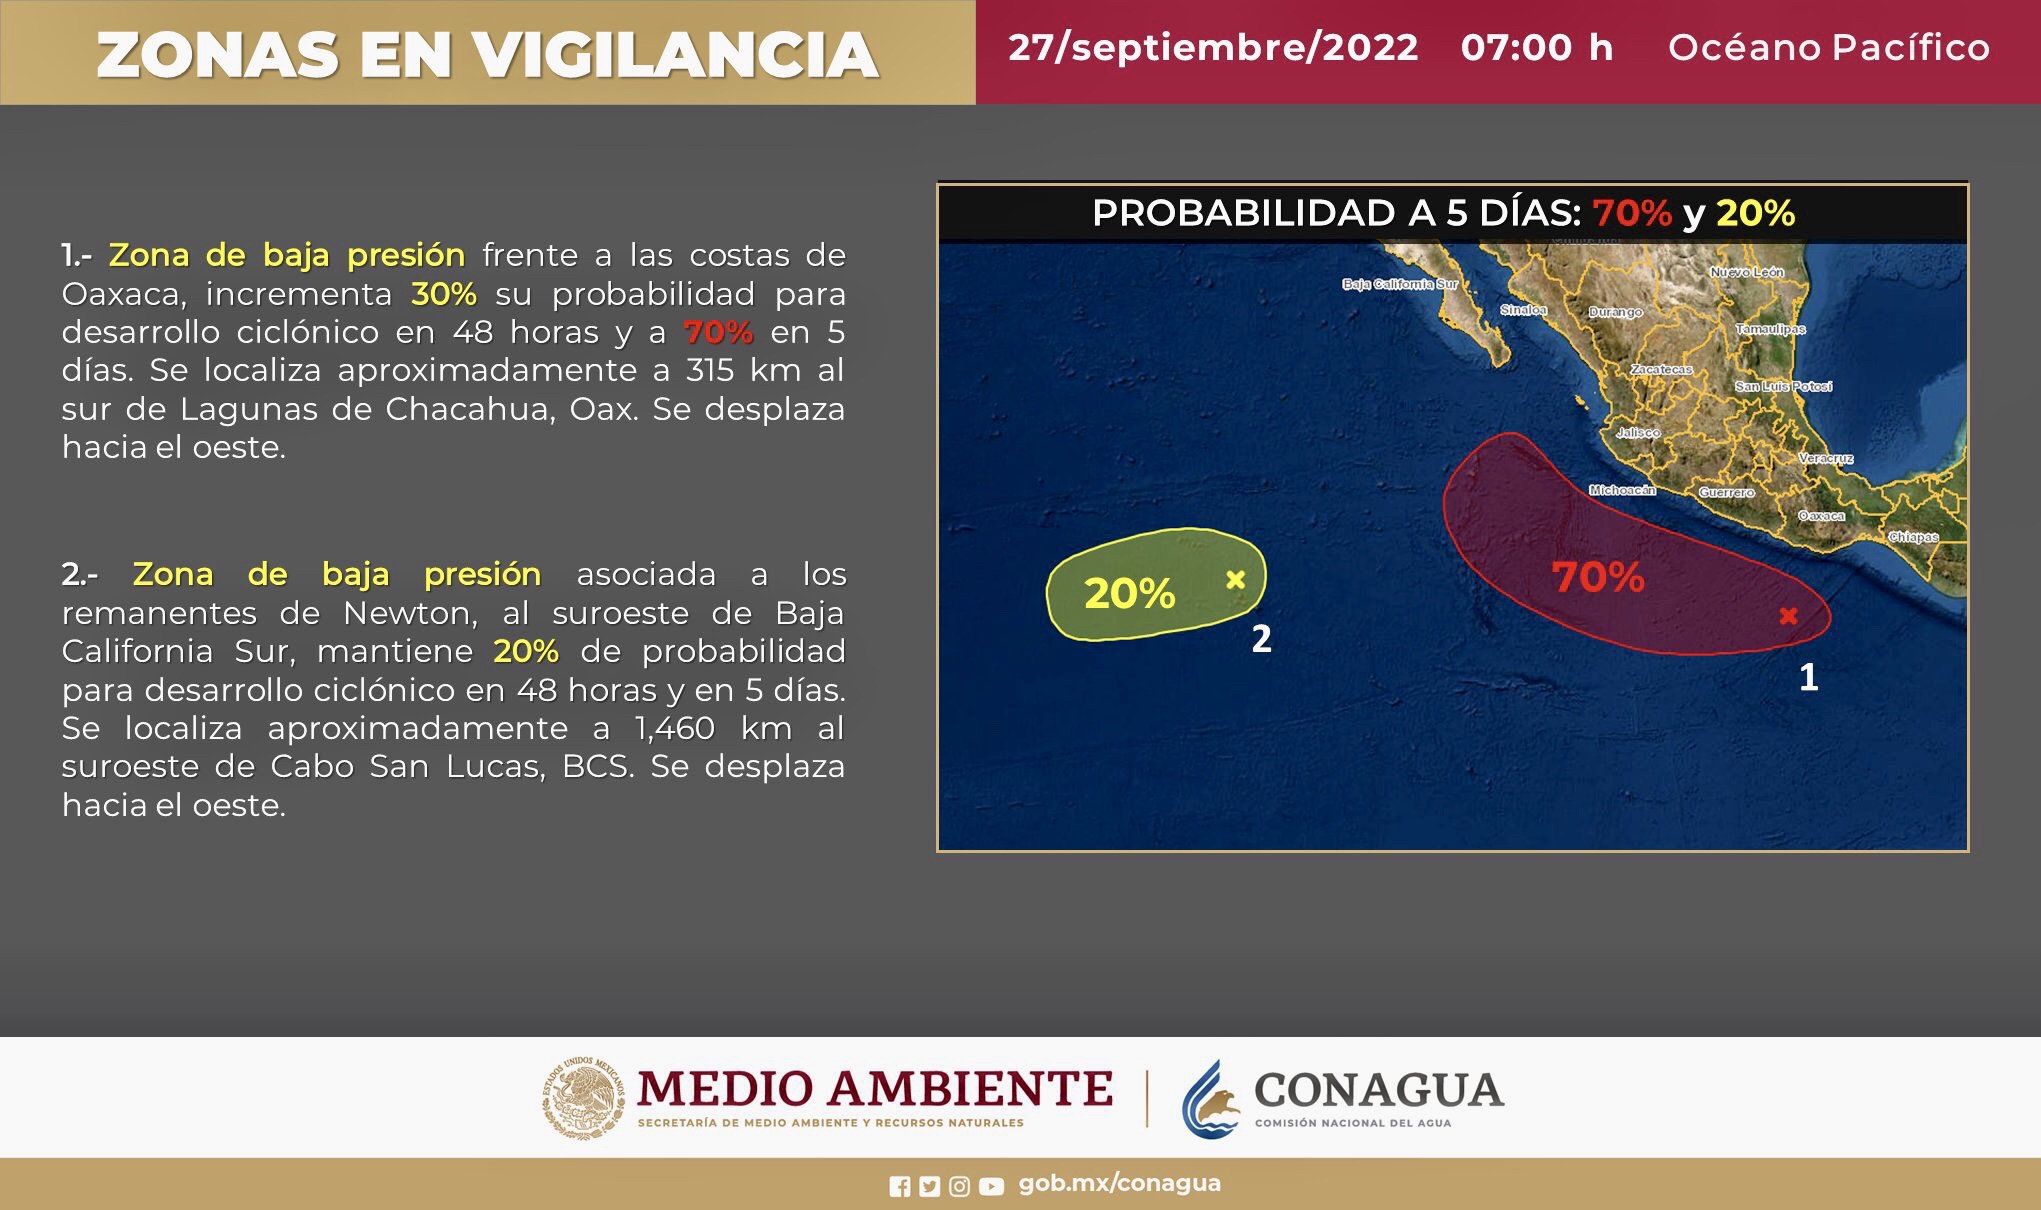 El #SMNmx mantiene en vigilancia dos zonas de Baja Presión con probabilidad para desarrollo ciclónico